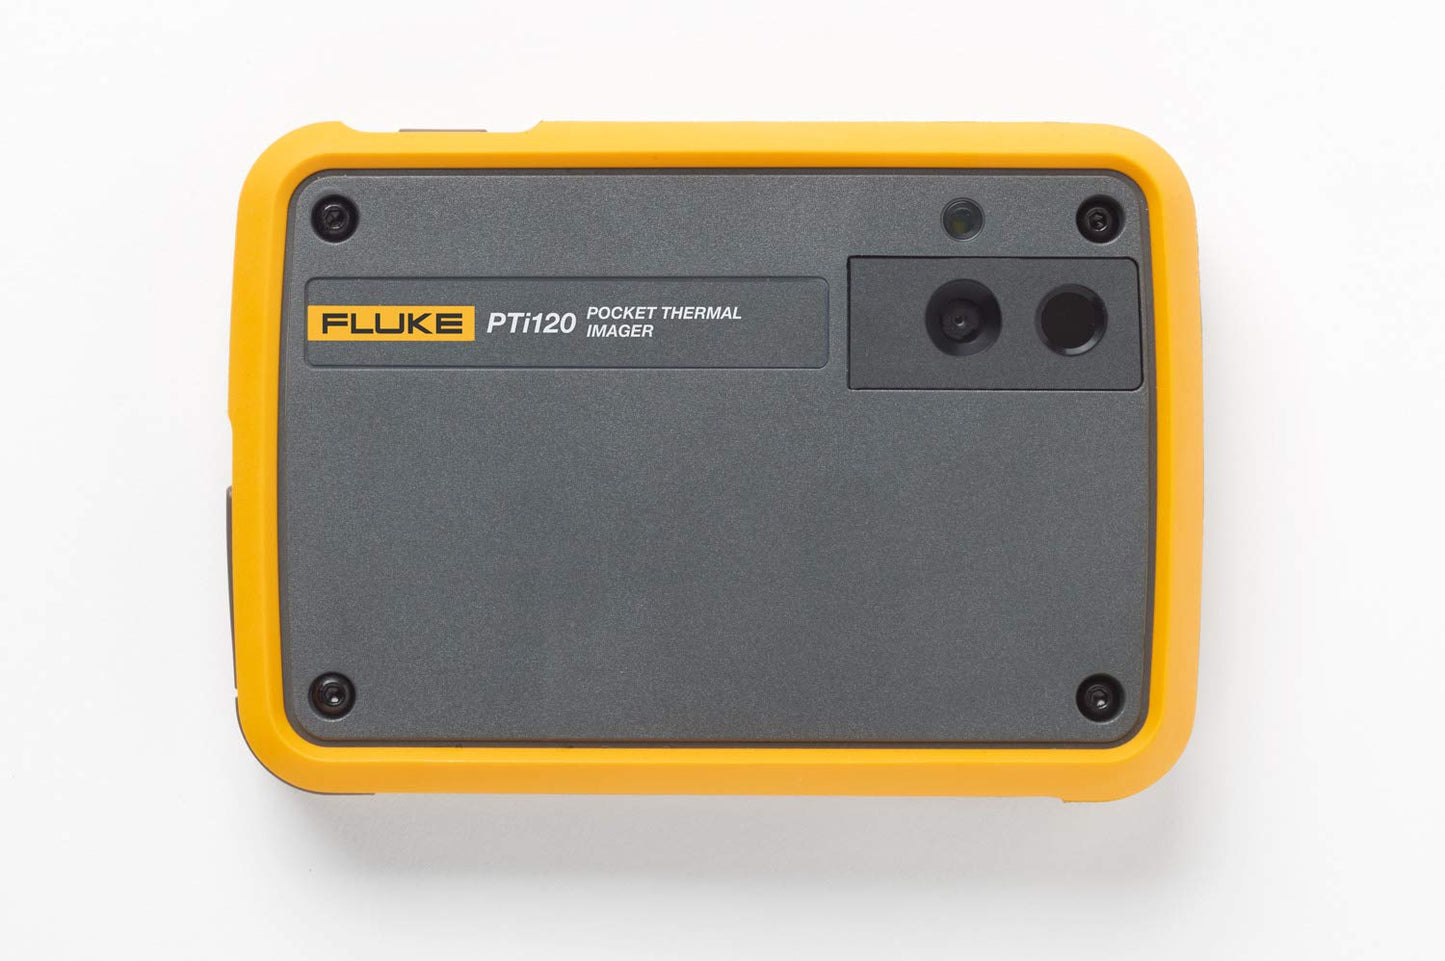 Fluke PTi120 Pocket Thermal Imager